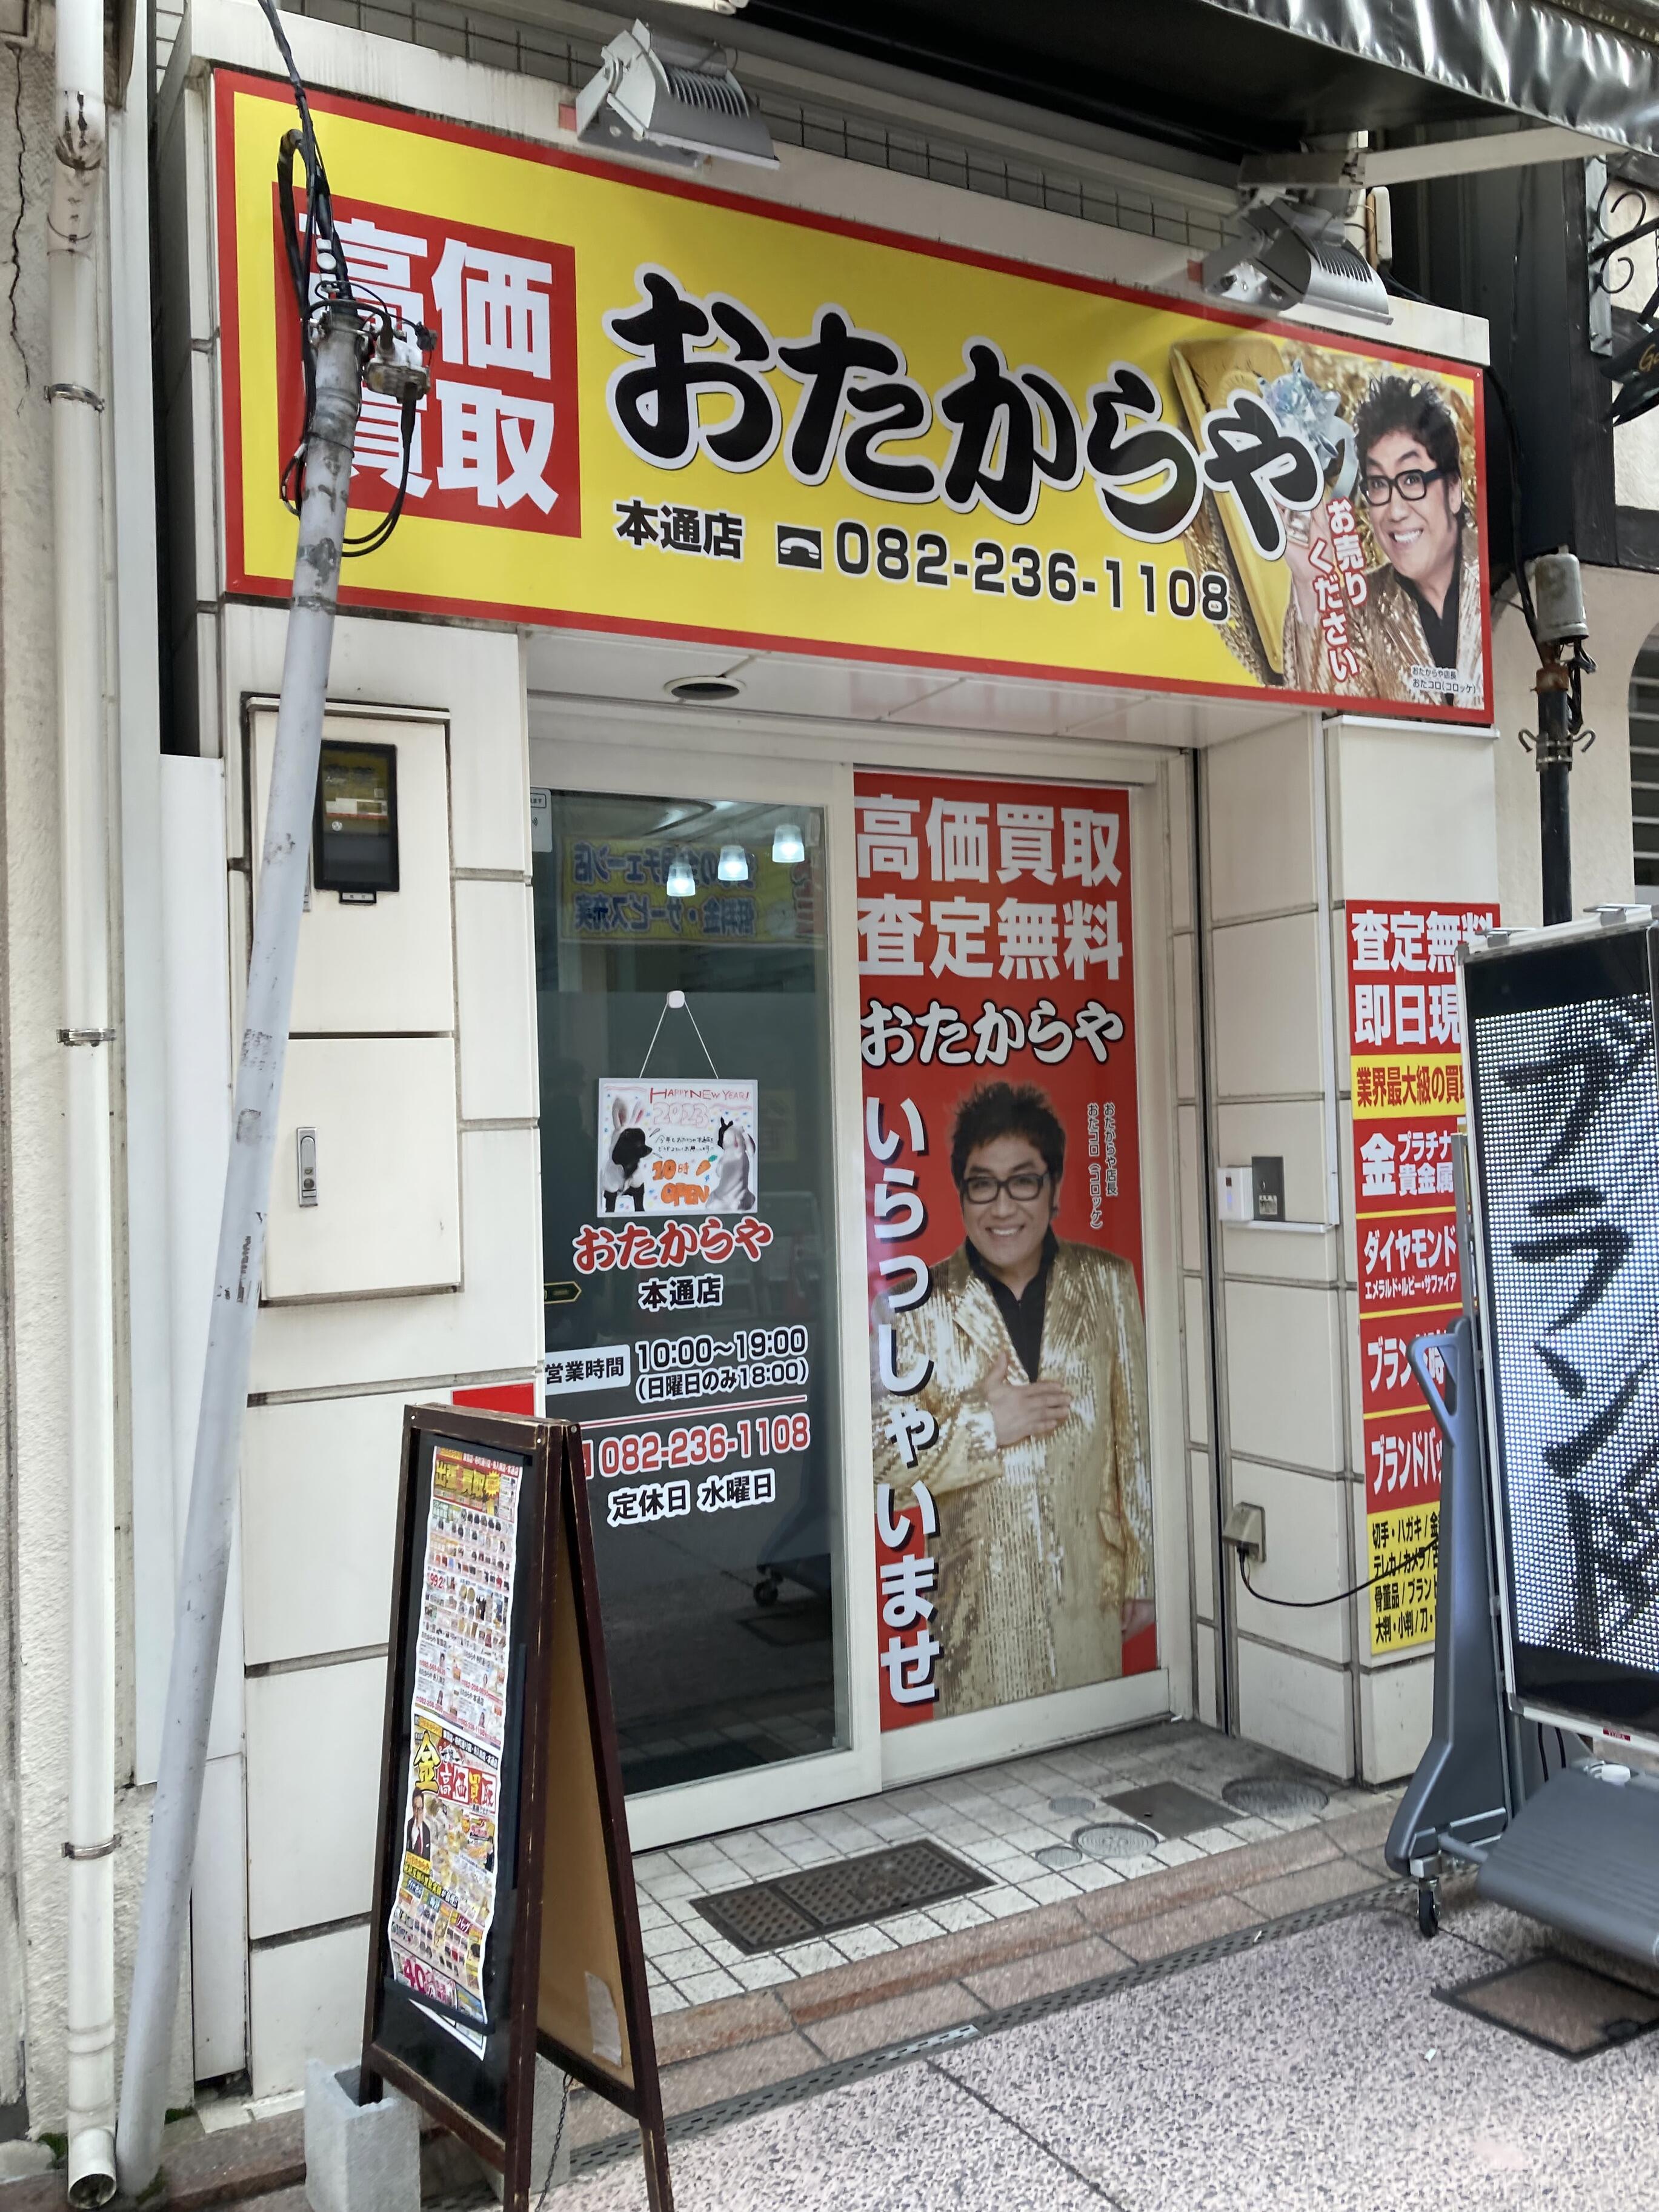 おたからや 本通店 - 広島市中区本通/買取専門店 | Yahoo!マップ